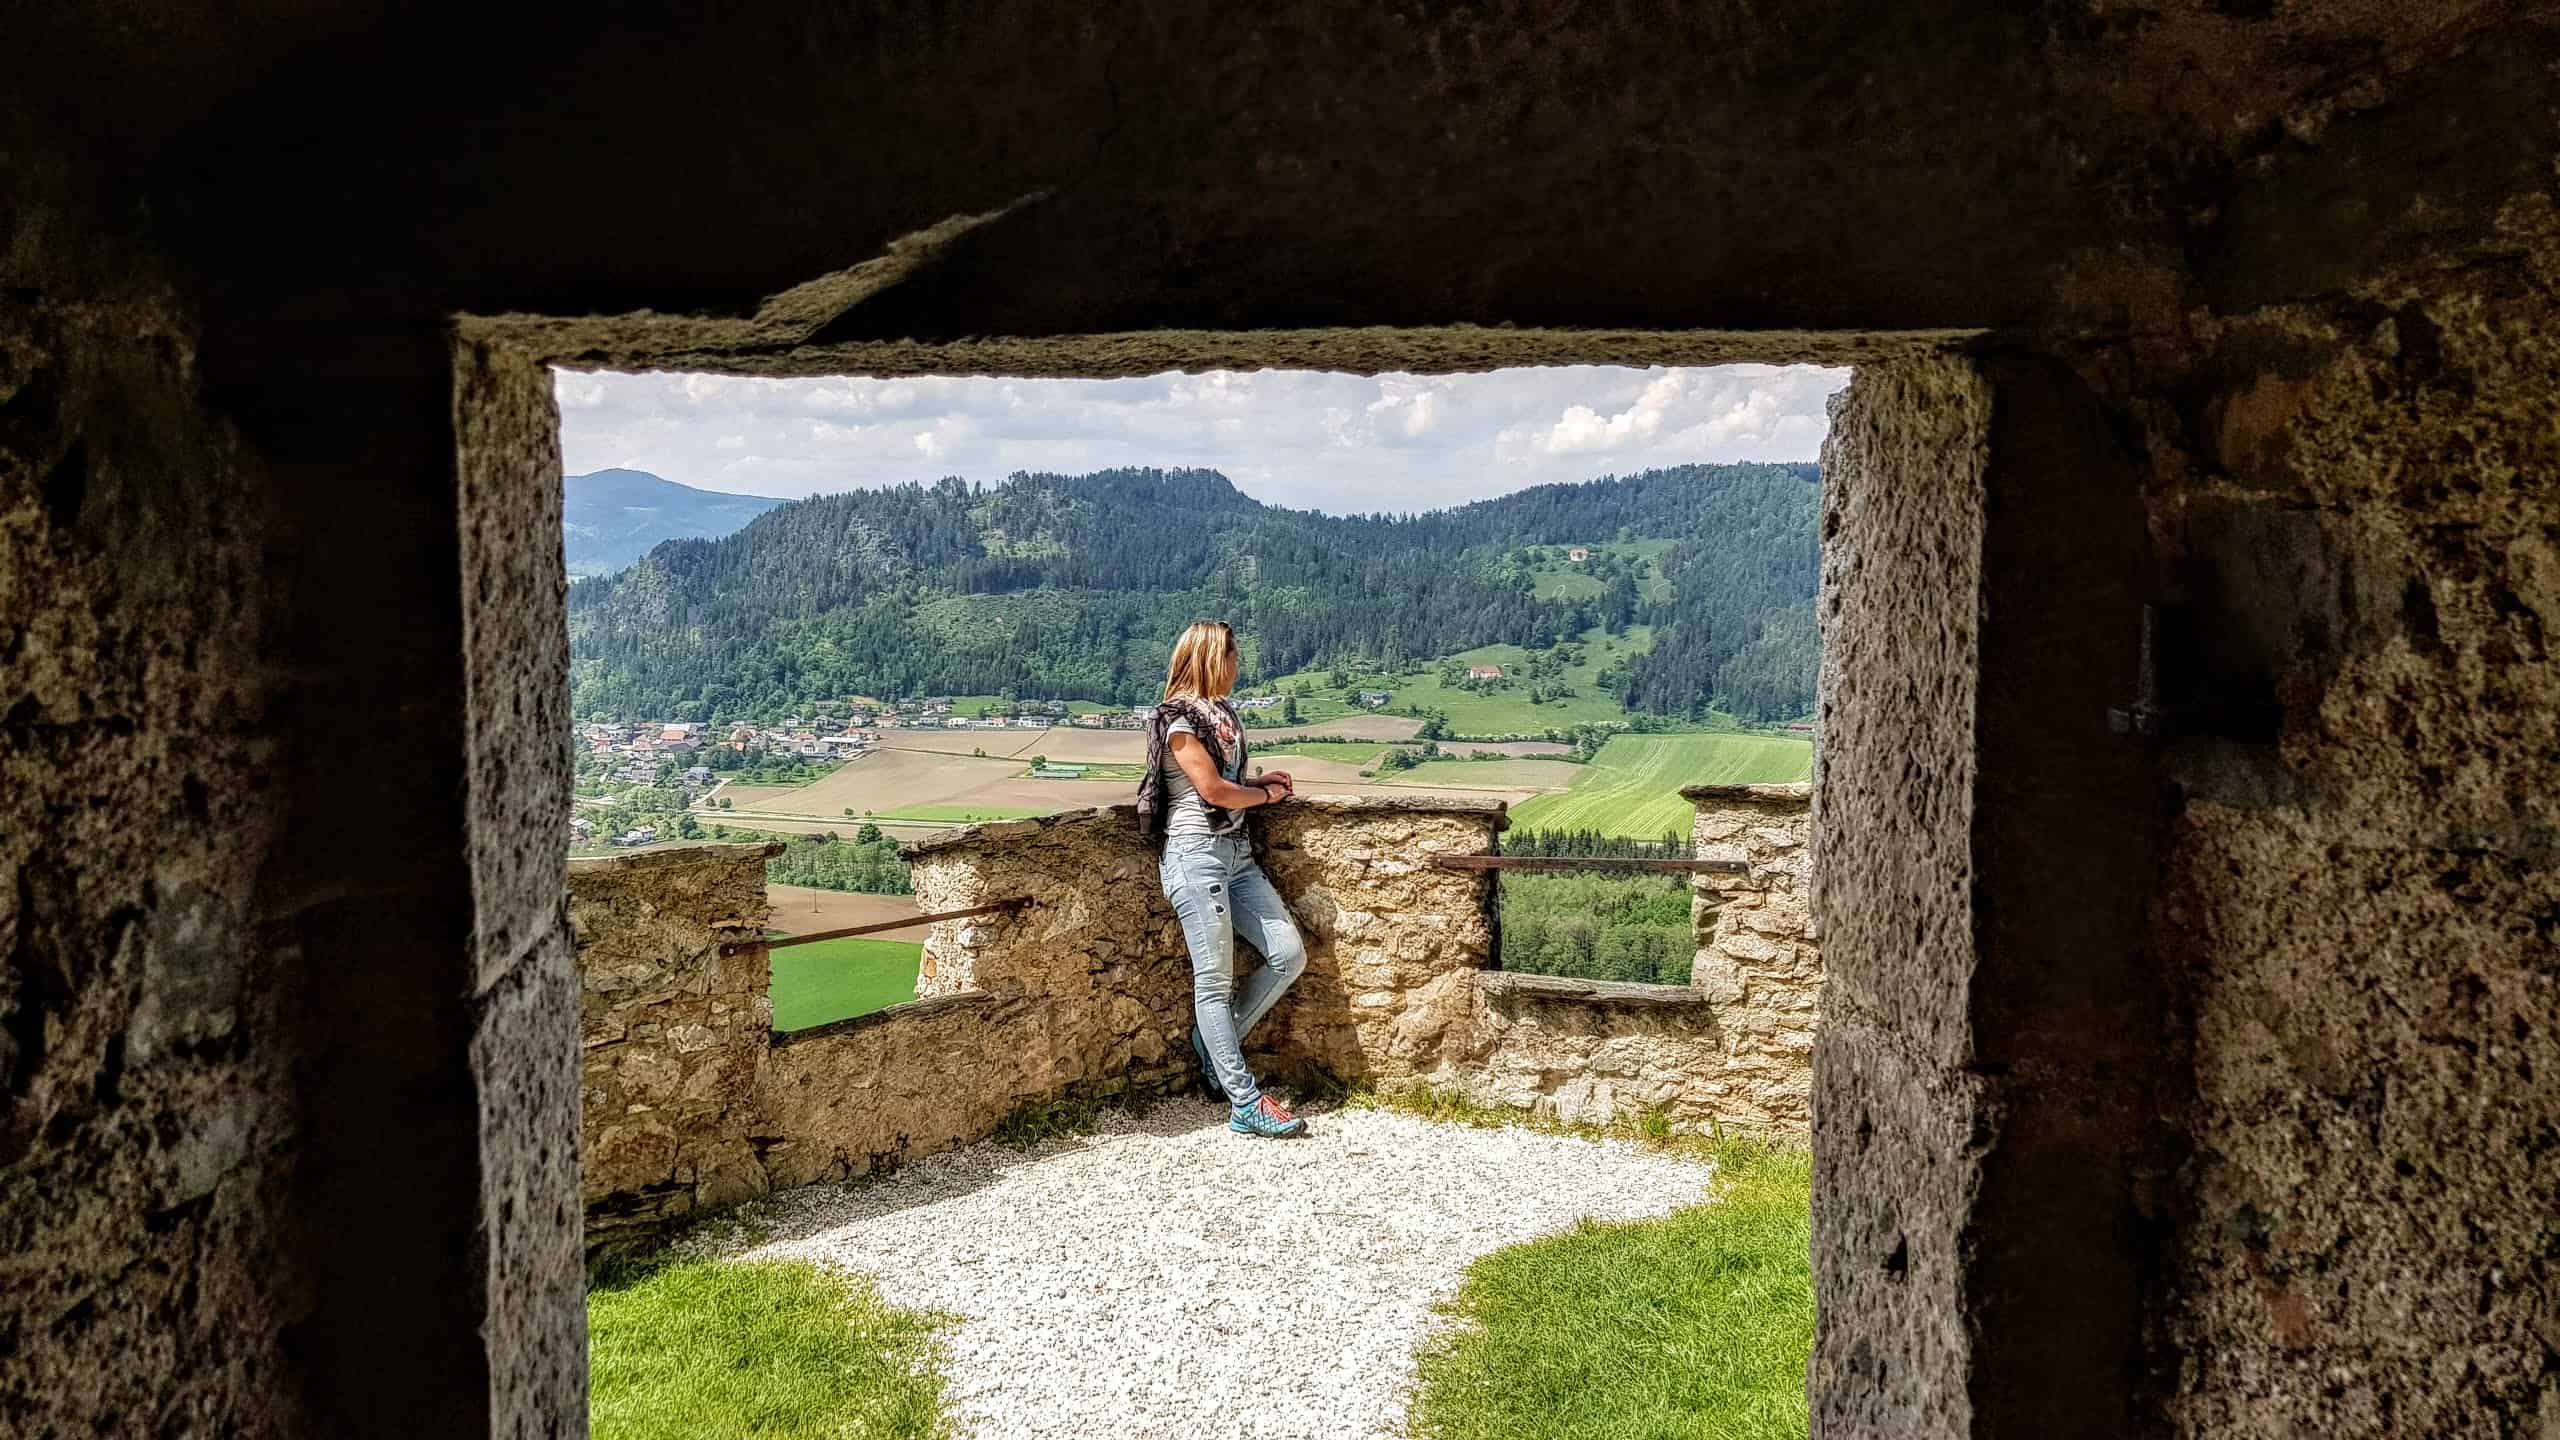 Impressionen Ausflug auf die Burg Hochosterwitz - Rastplatz mit Panorama-Sicht auf die Urlaubsregion Mittelkärnten.